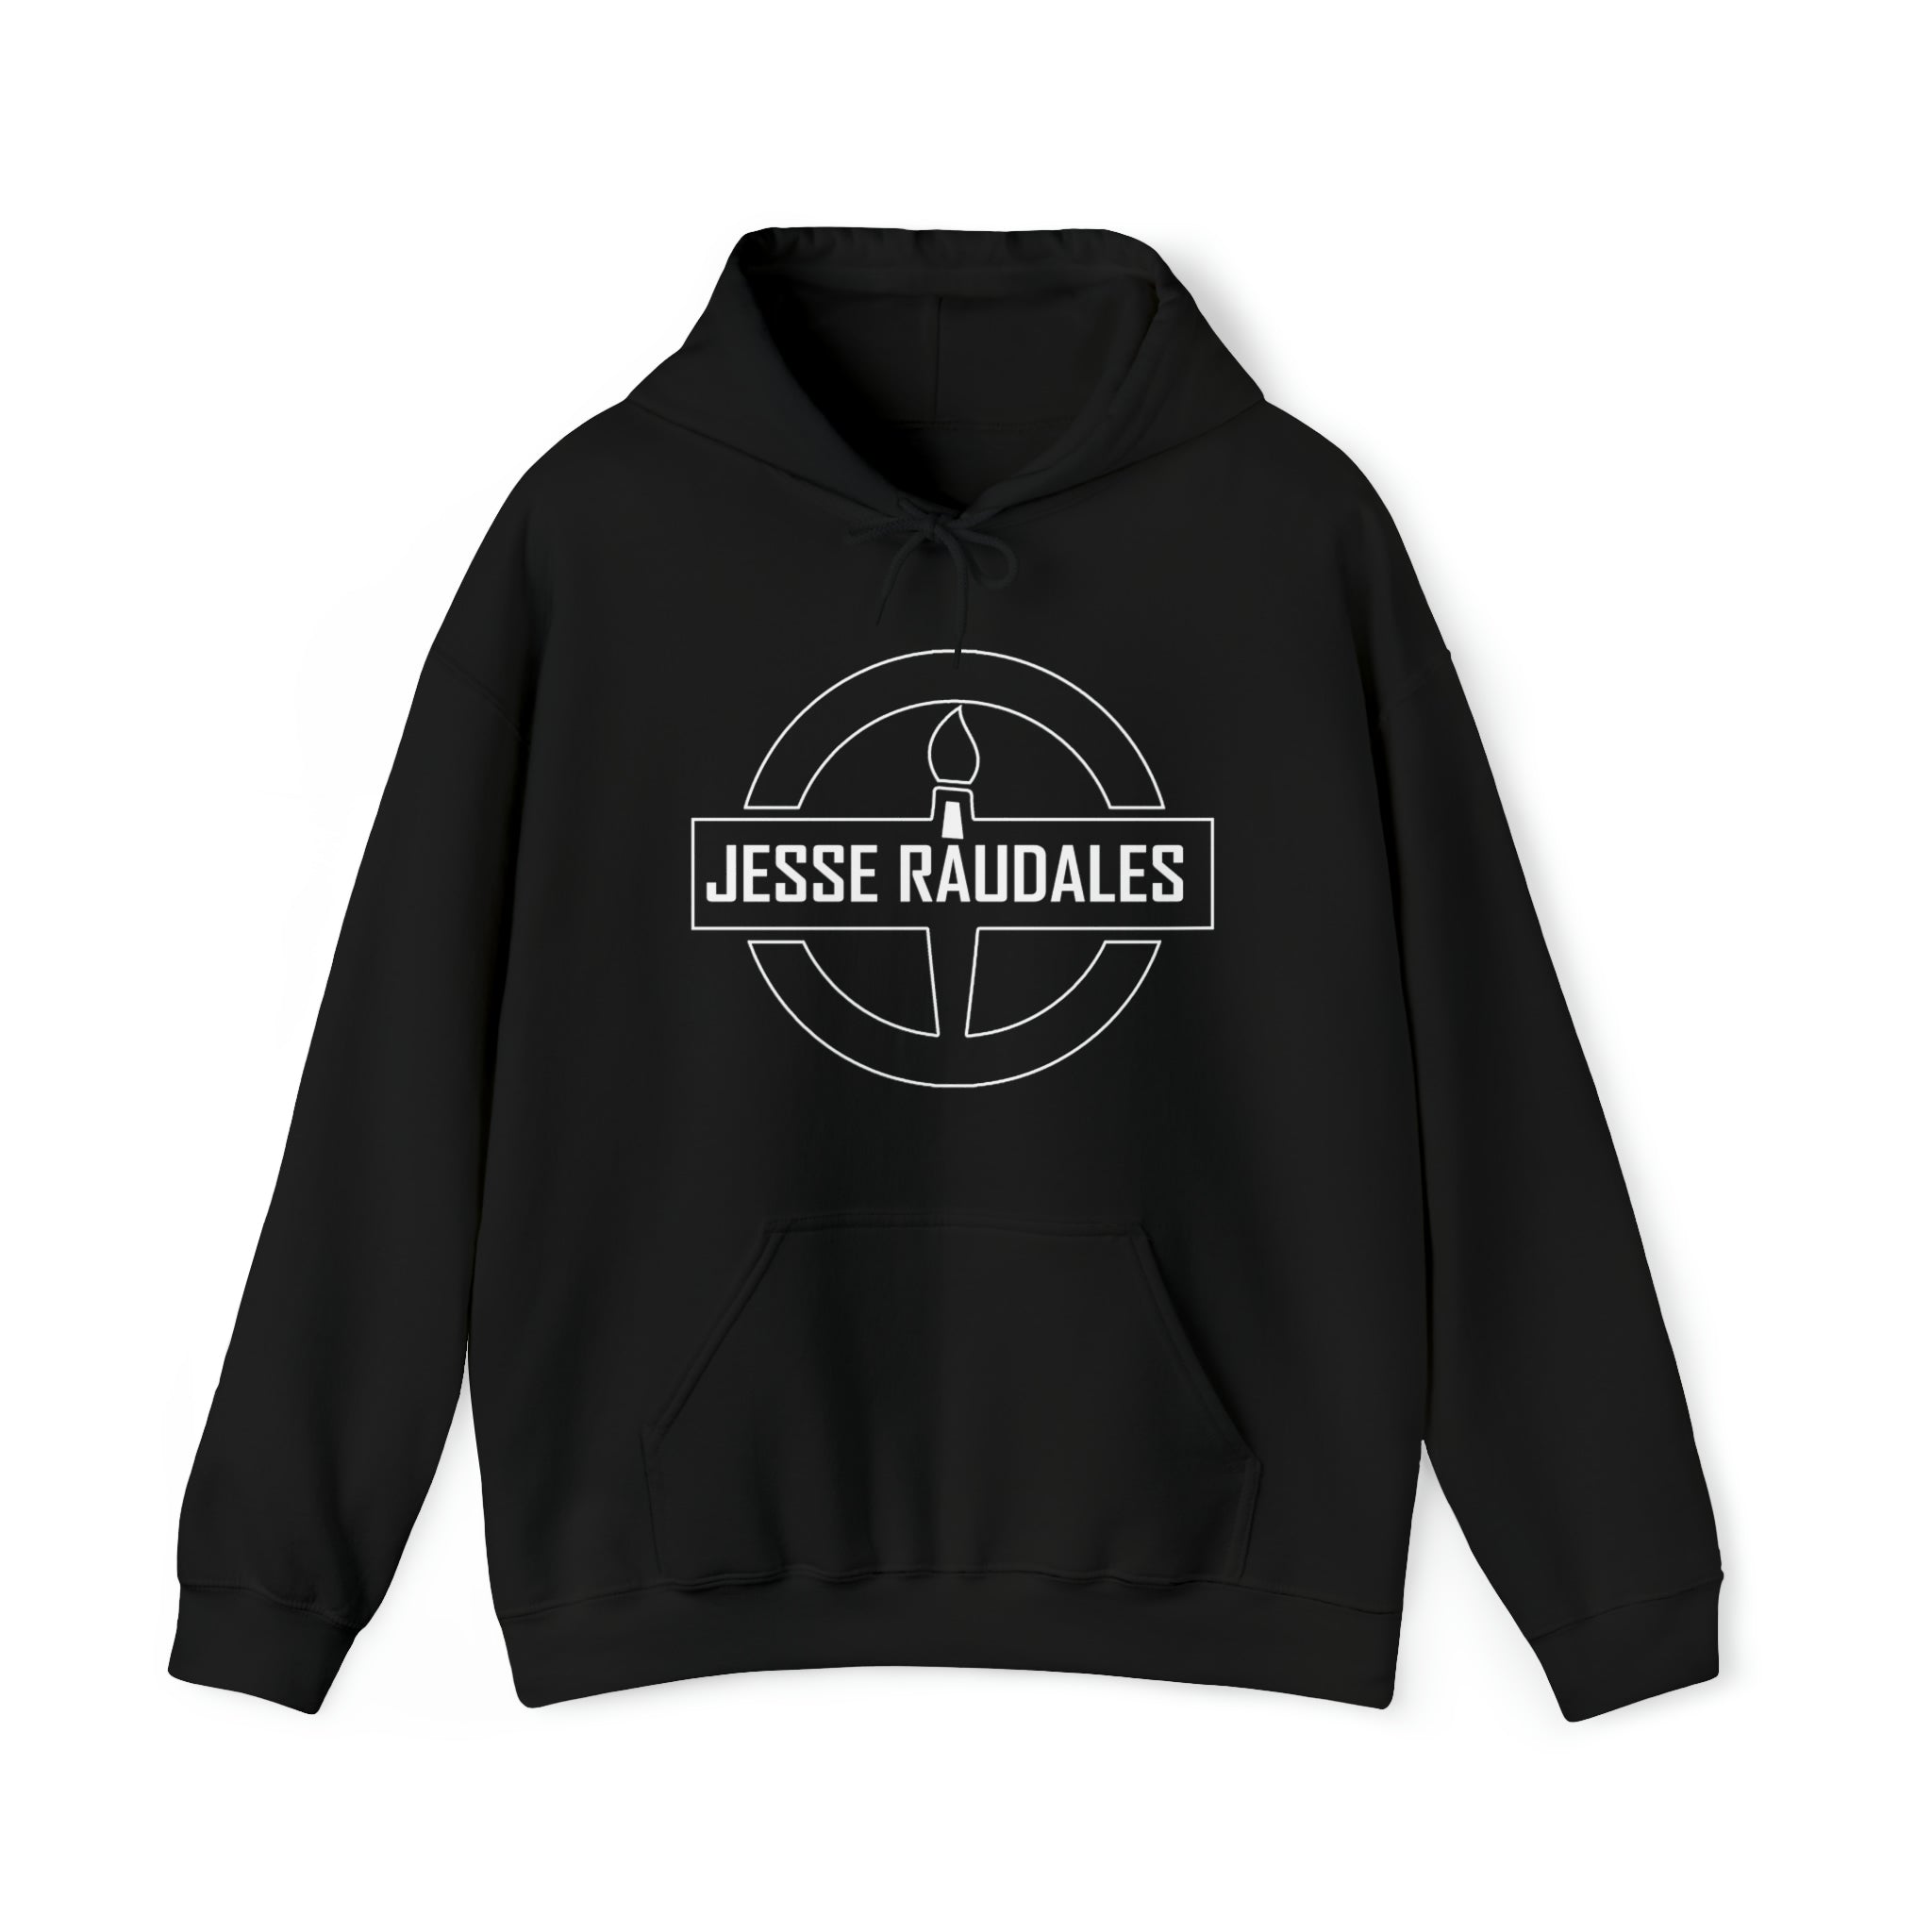 Jesse Raudales Unisex Heavy Blend™ Hooded Sweatshirt